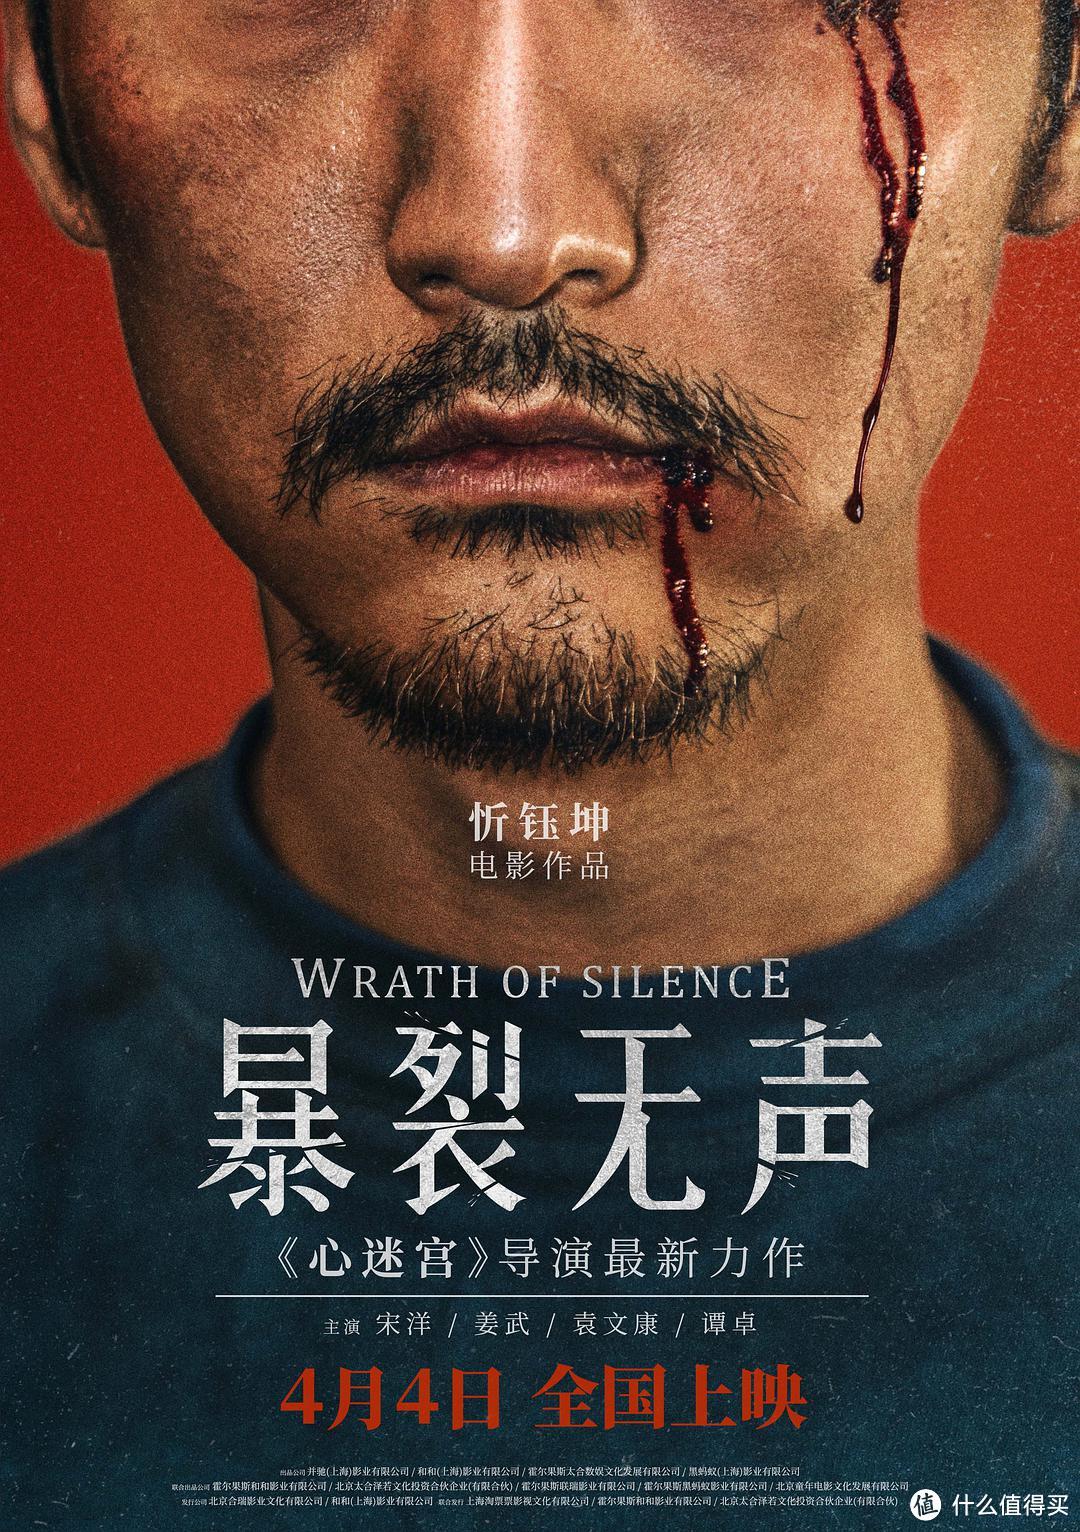 这些也许是2018年最好看的华语电影